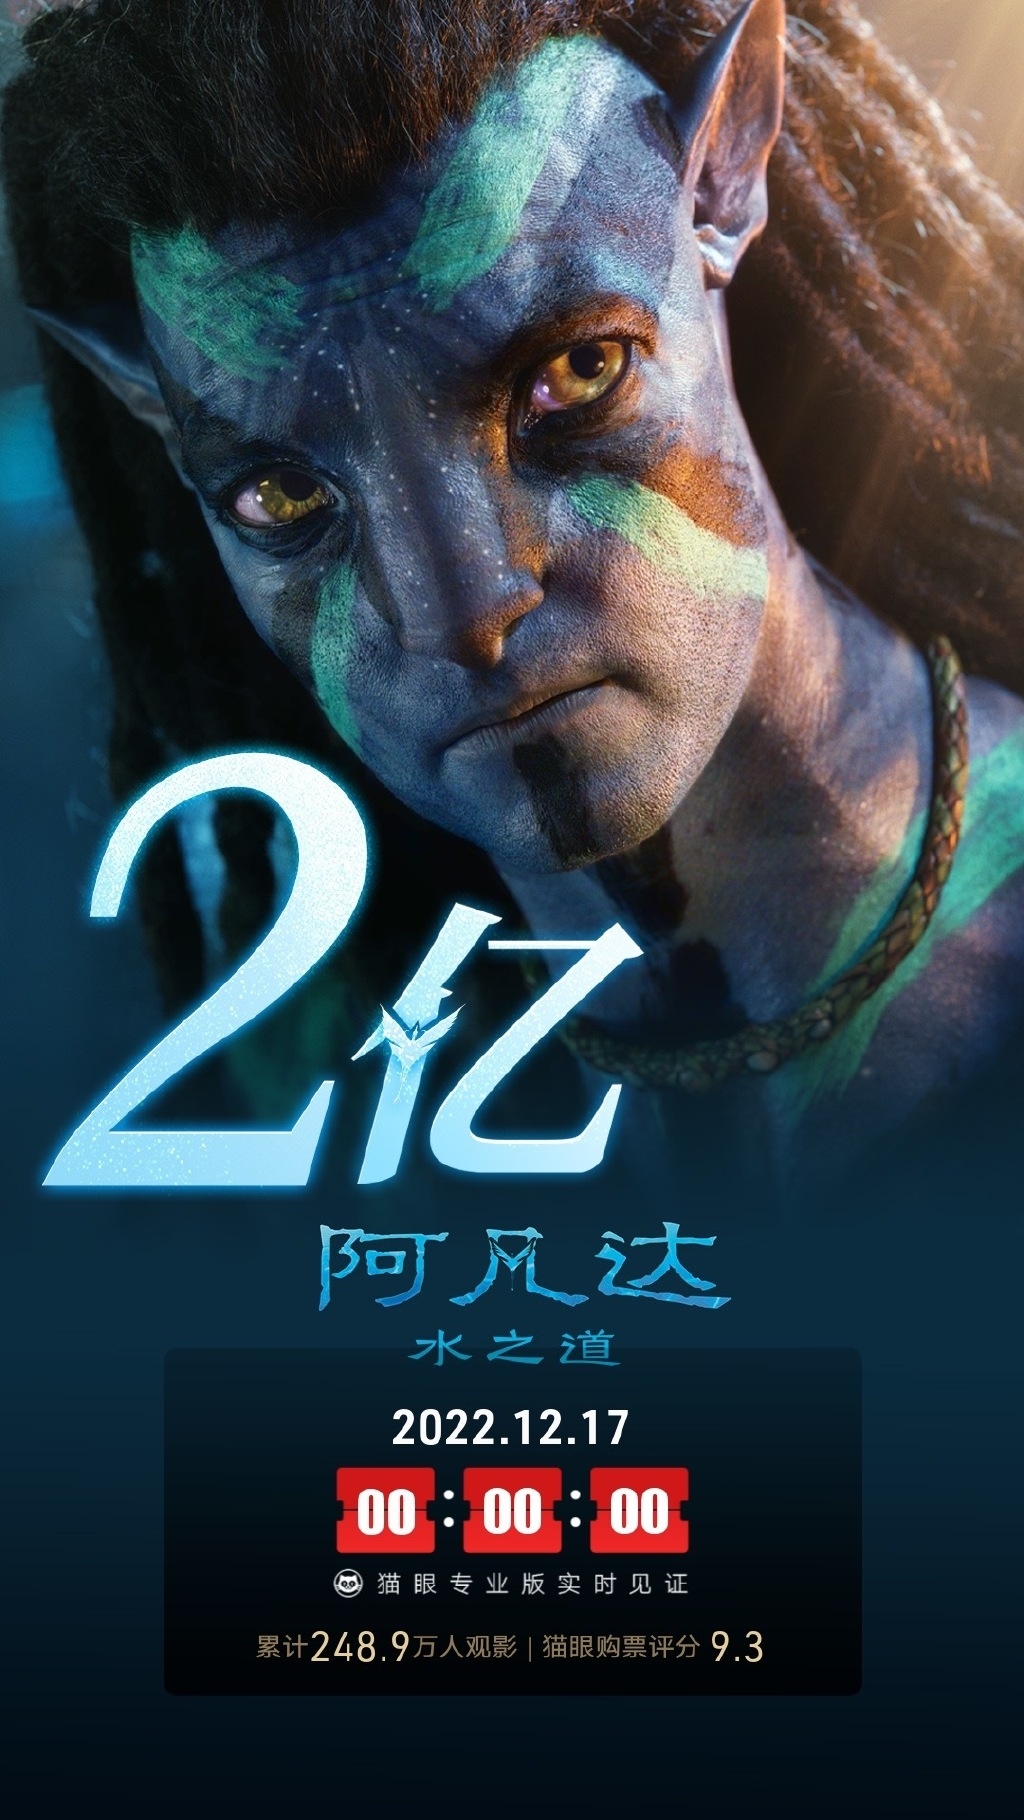 上映第二天《阿凡达2：水之道》总票房已突破2亿